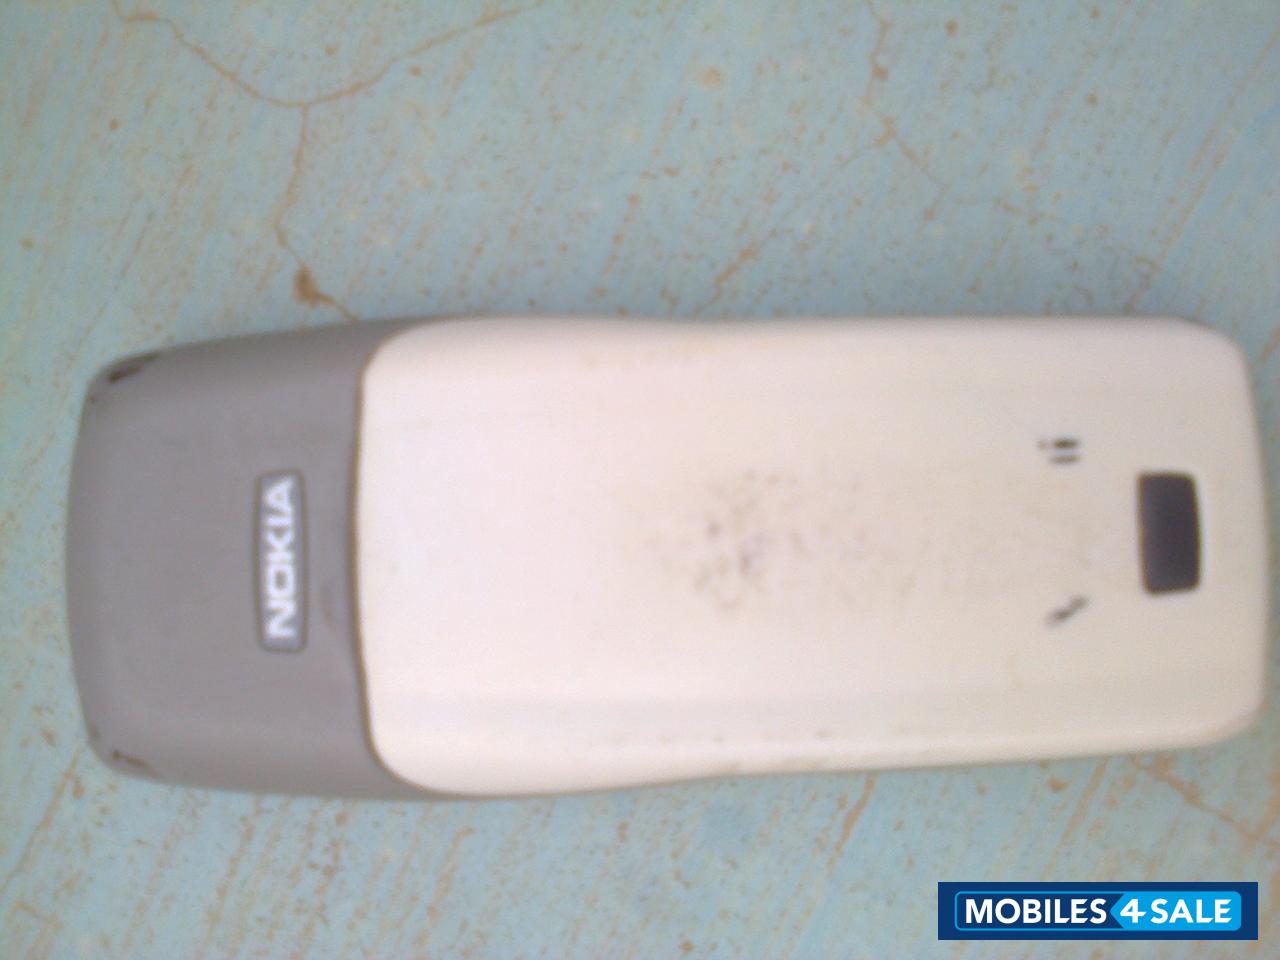 White Nokia 1100